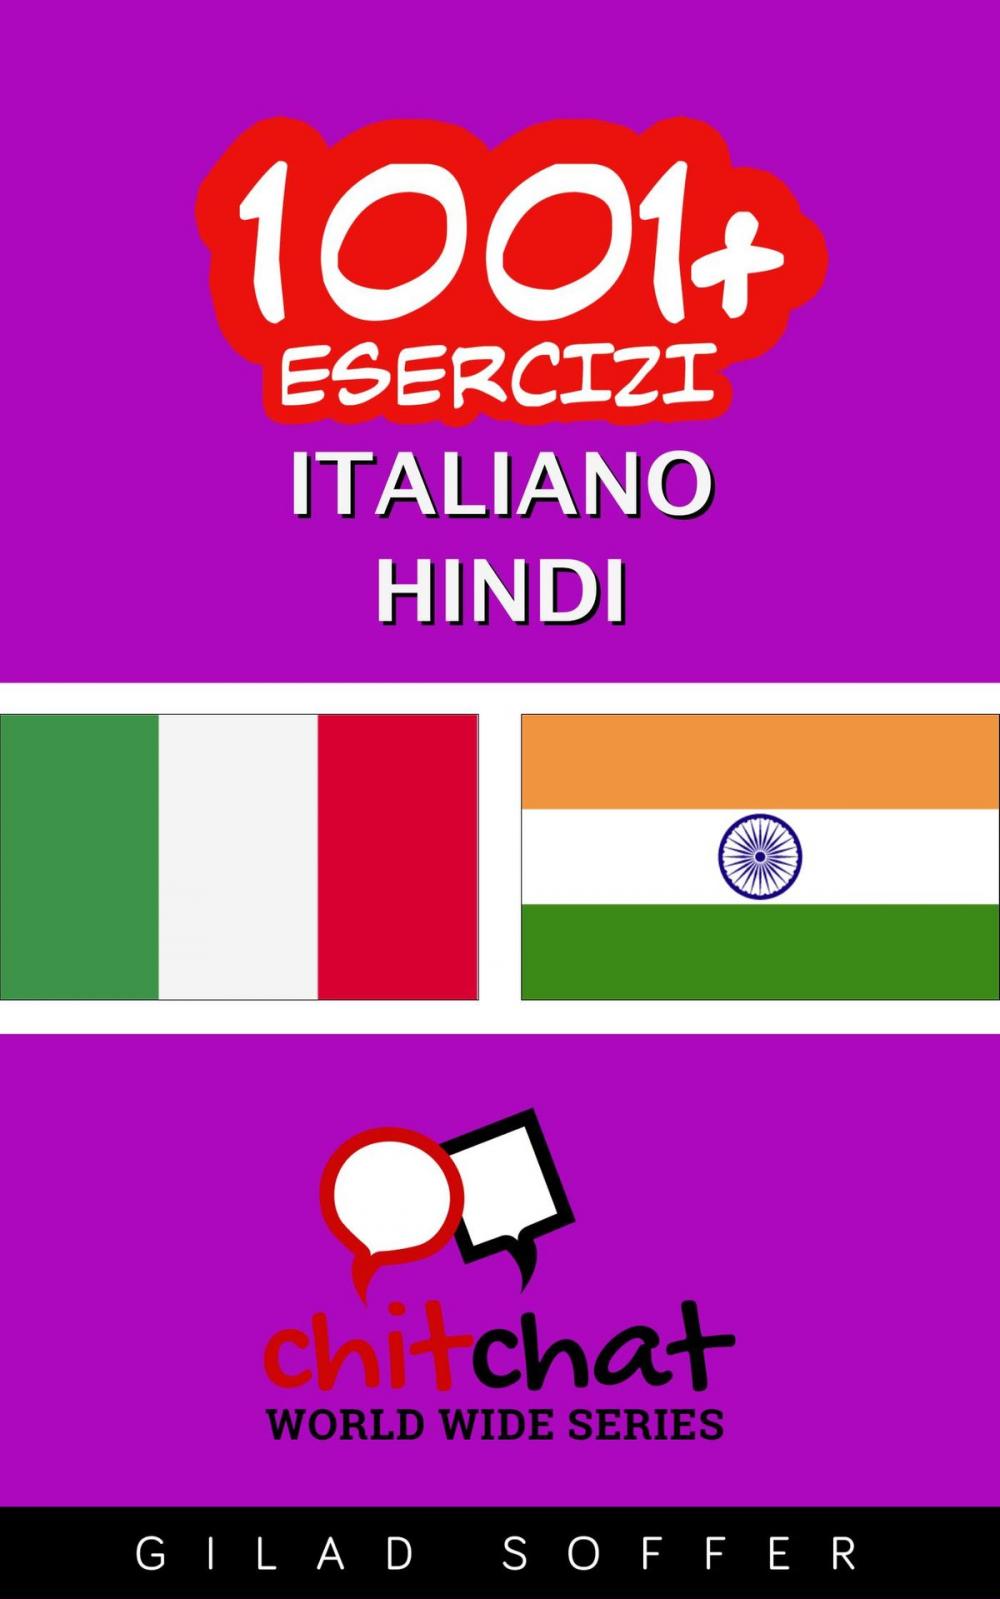 Big bigCover of 1001+ Esercizi Italiano - Hindi